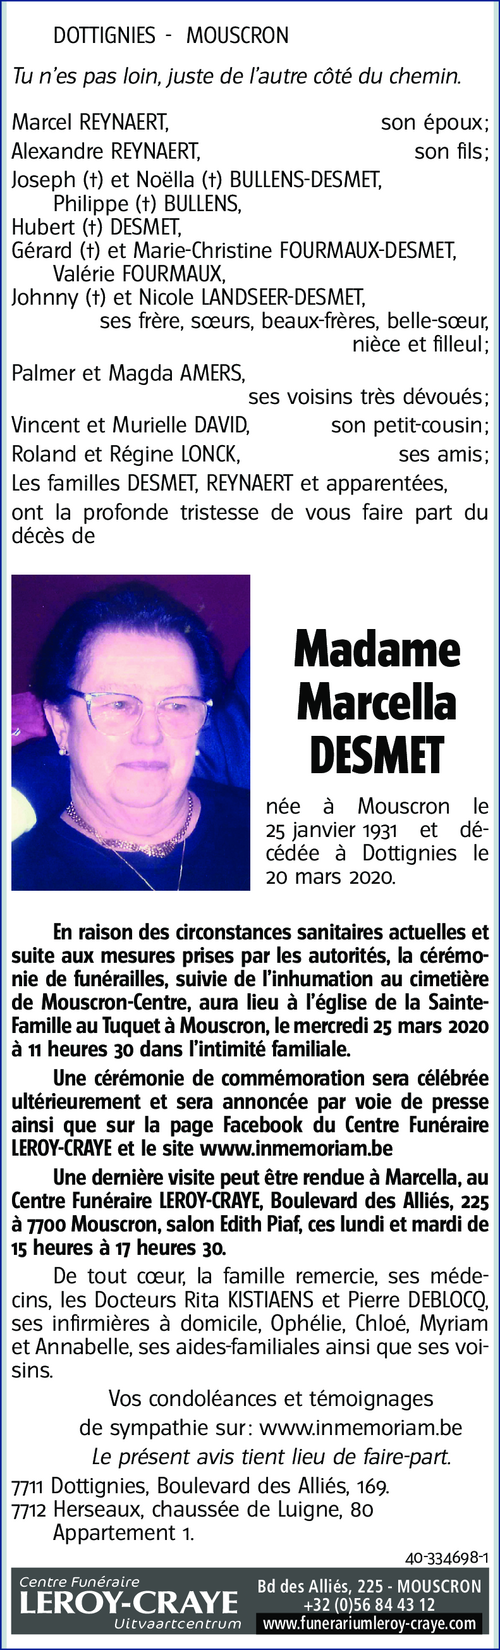 Marcella DESMET